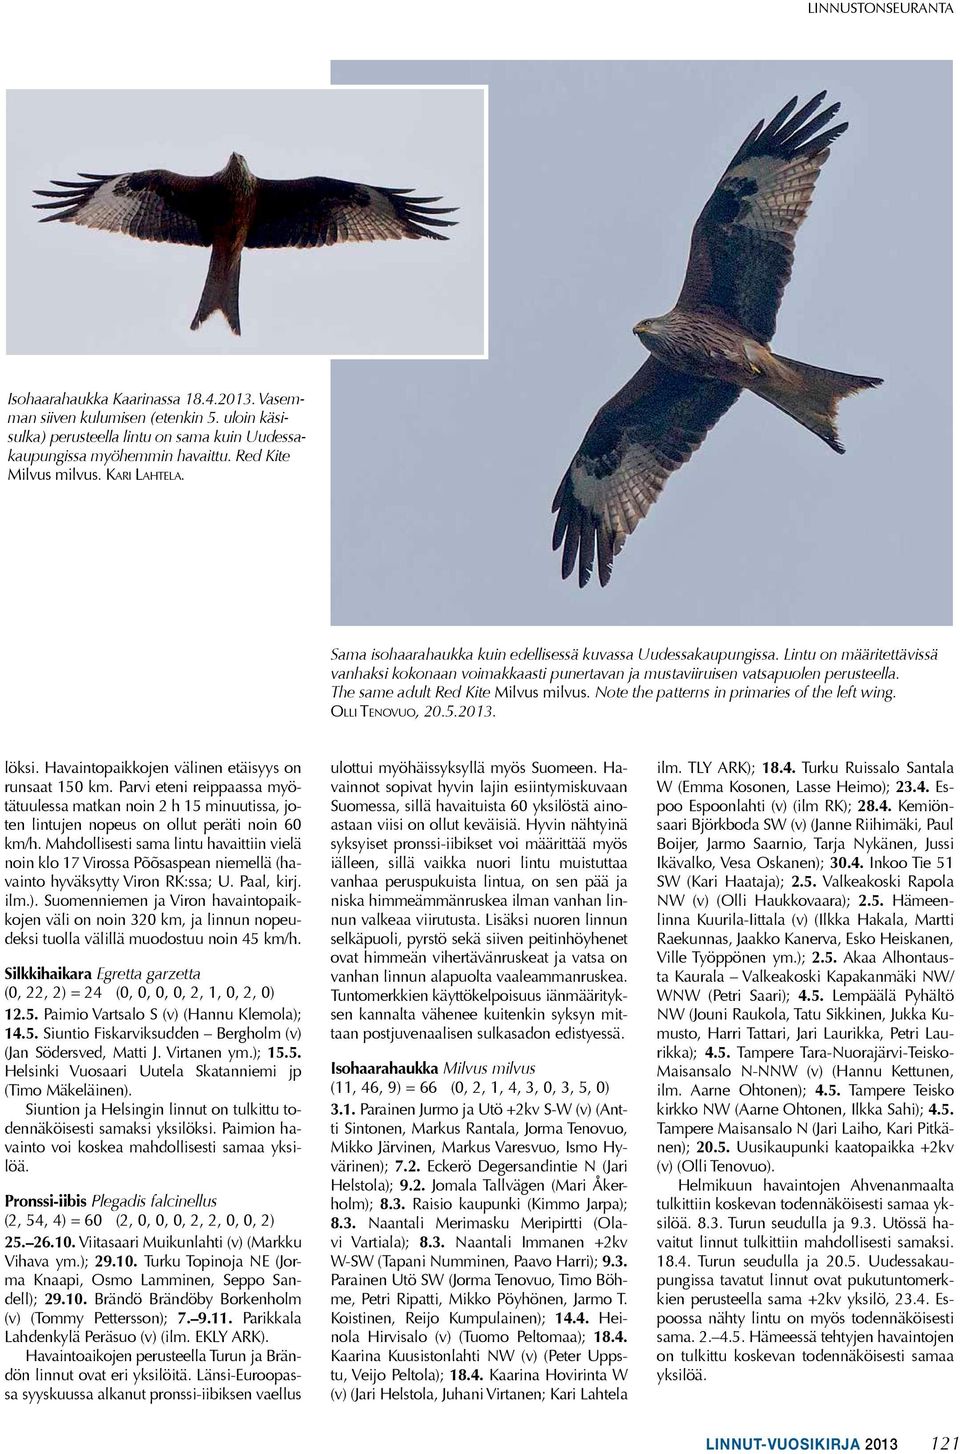 Lintu on määritettävissä vanhaksi kokonaan voimakkaasti punertavan ja mustaviiruisen vatsapuolen perusteella. The same adult Red Kite Milvus milvus. Note the patterns in primaries of the left wing.